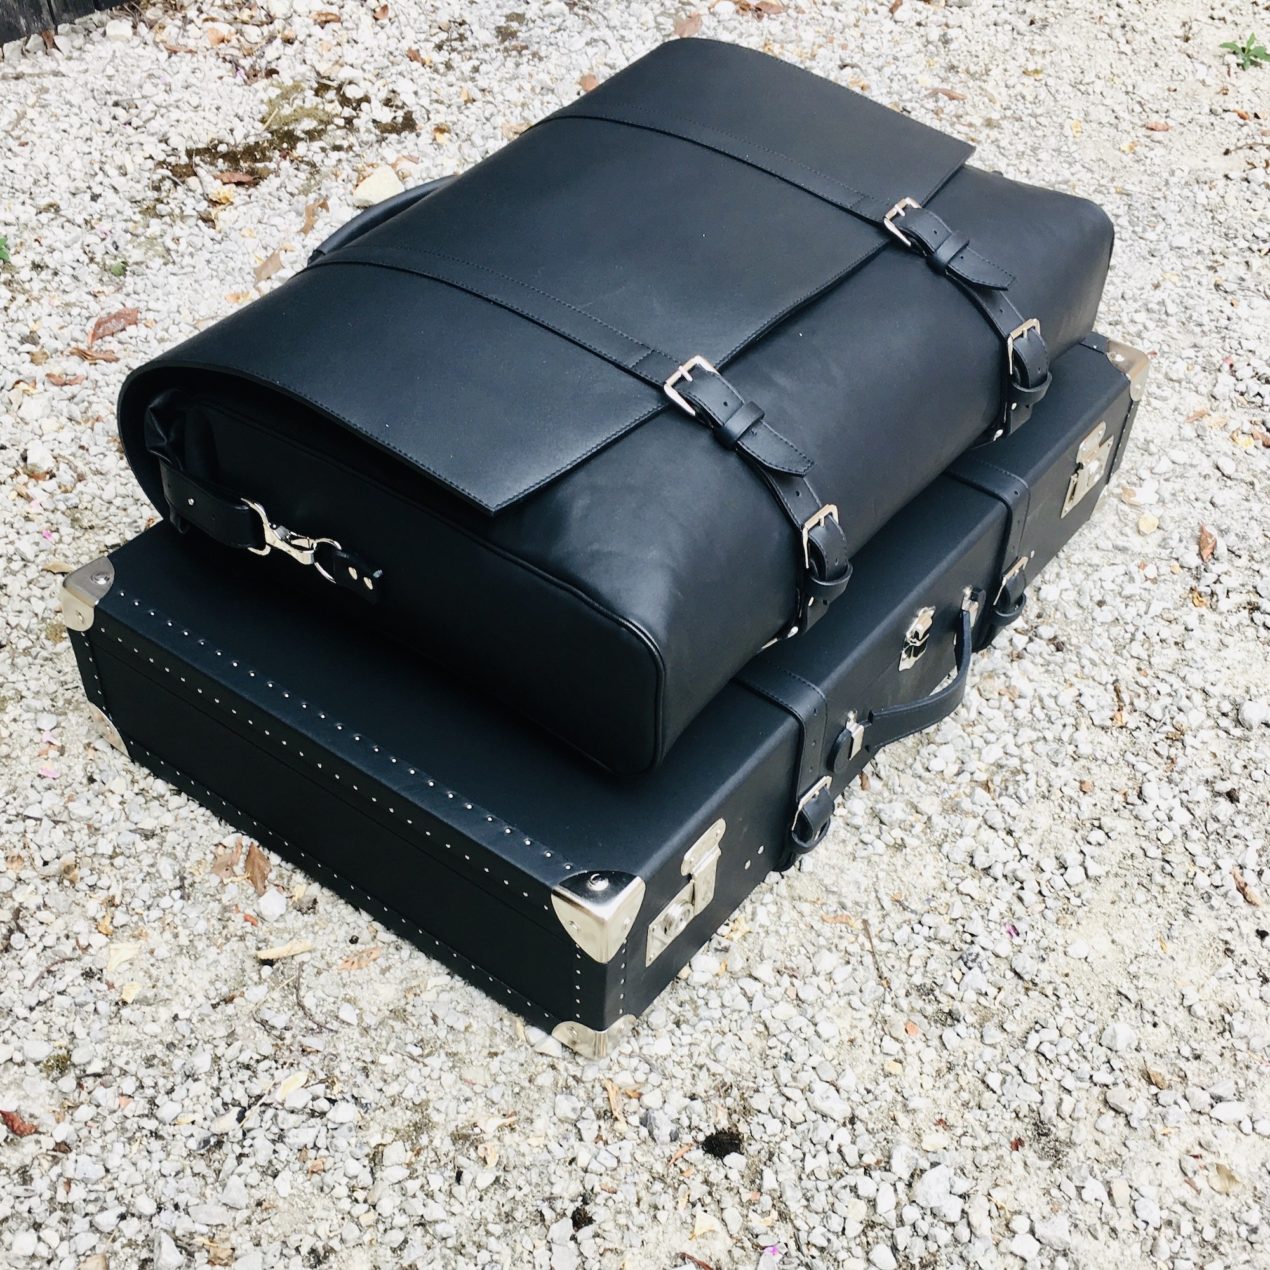 Voyager Bag - Back pack black leather Roadster and Cabriolet suitcase